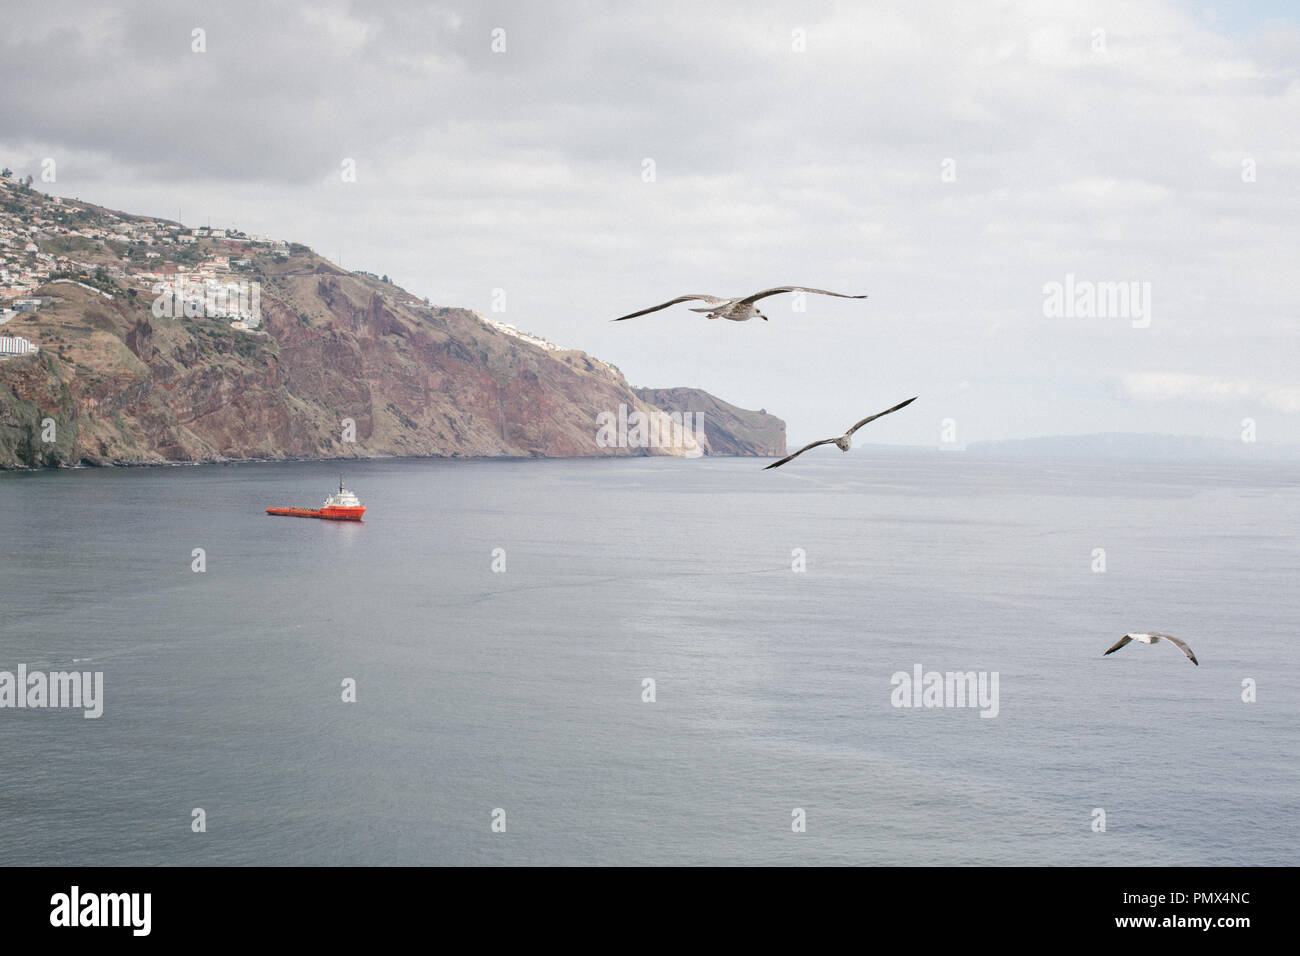 Las aves marinas (gaviotas) volando alto a lo largo de un tranquilo mar azul con un barco por debajo y el litoral en el fondo Foto de stock